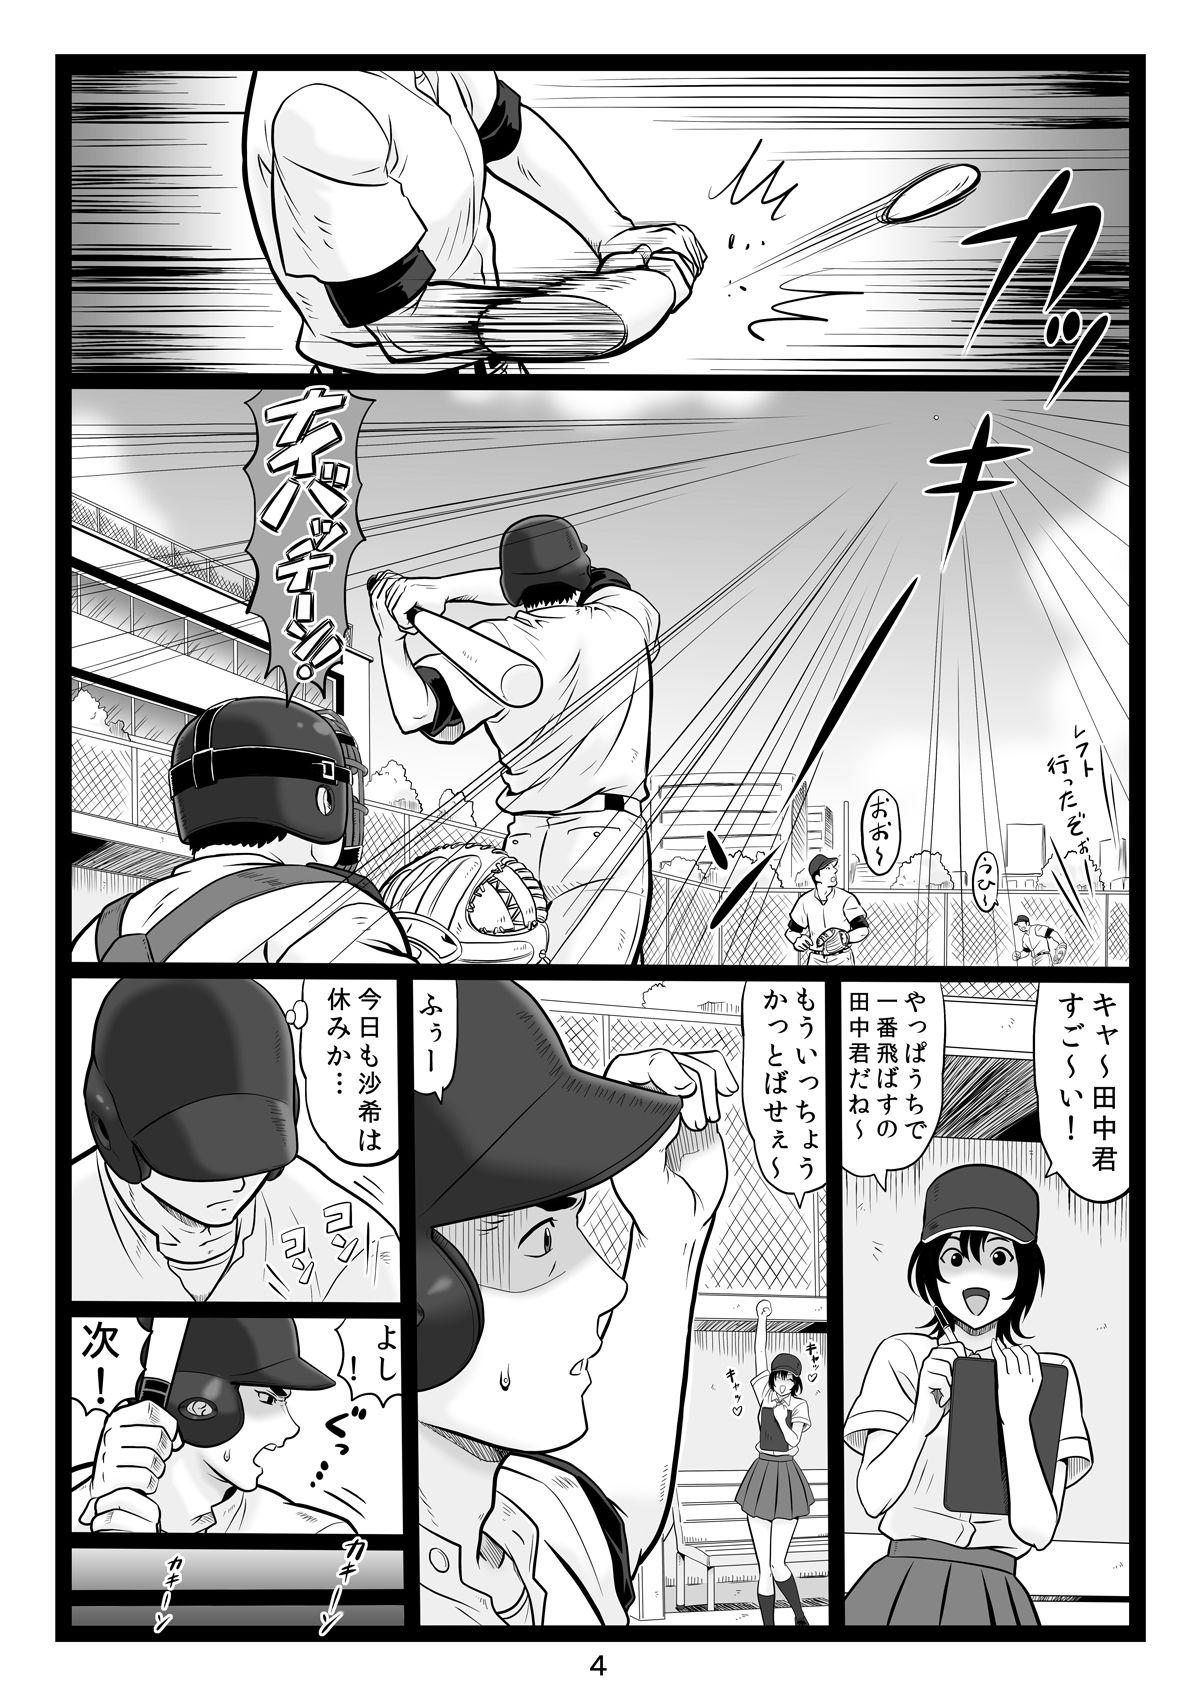 Roughsex Tawawa de Akarui Yakyuubu Manager ga Inshitsu na Kyoushi no Wana ni... Sonogo... - Original Alone - Page 4